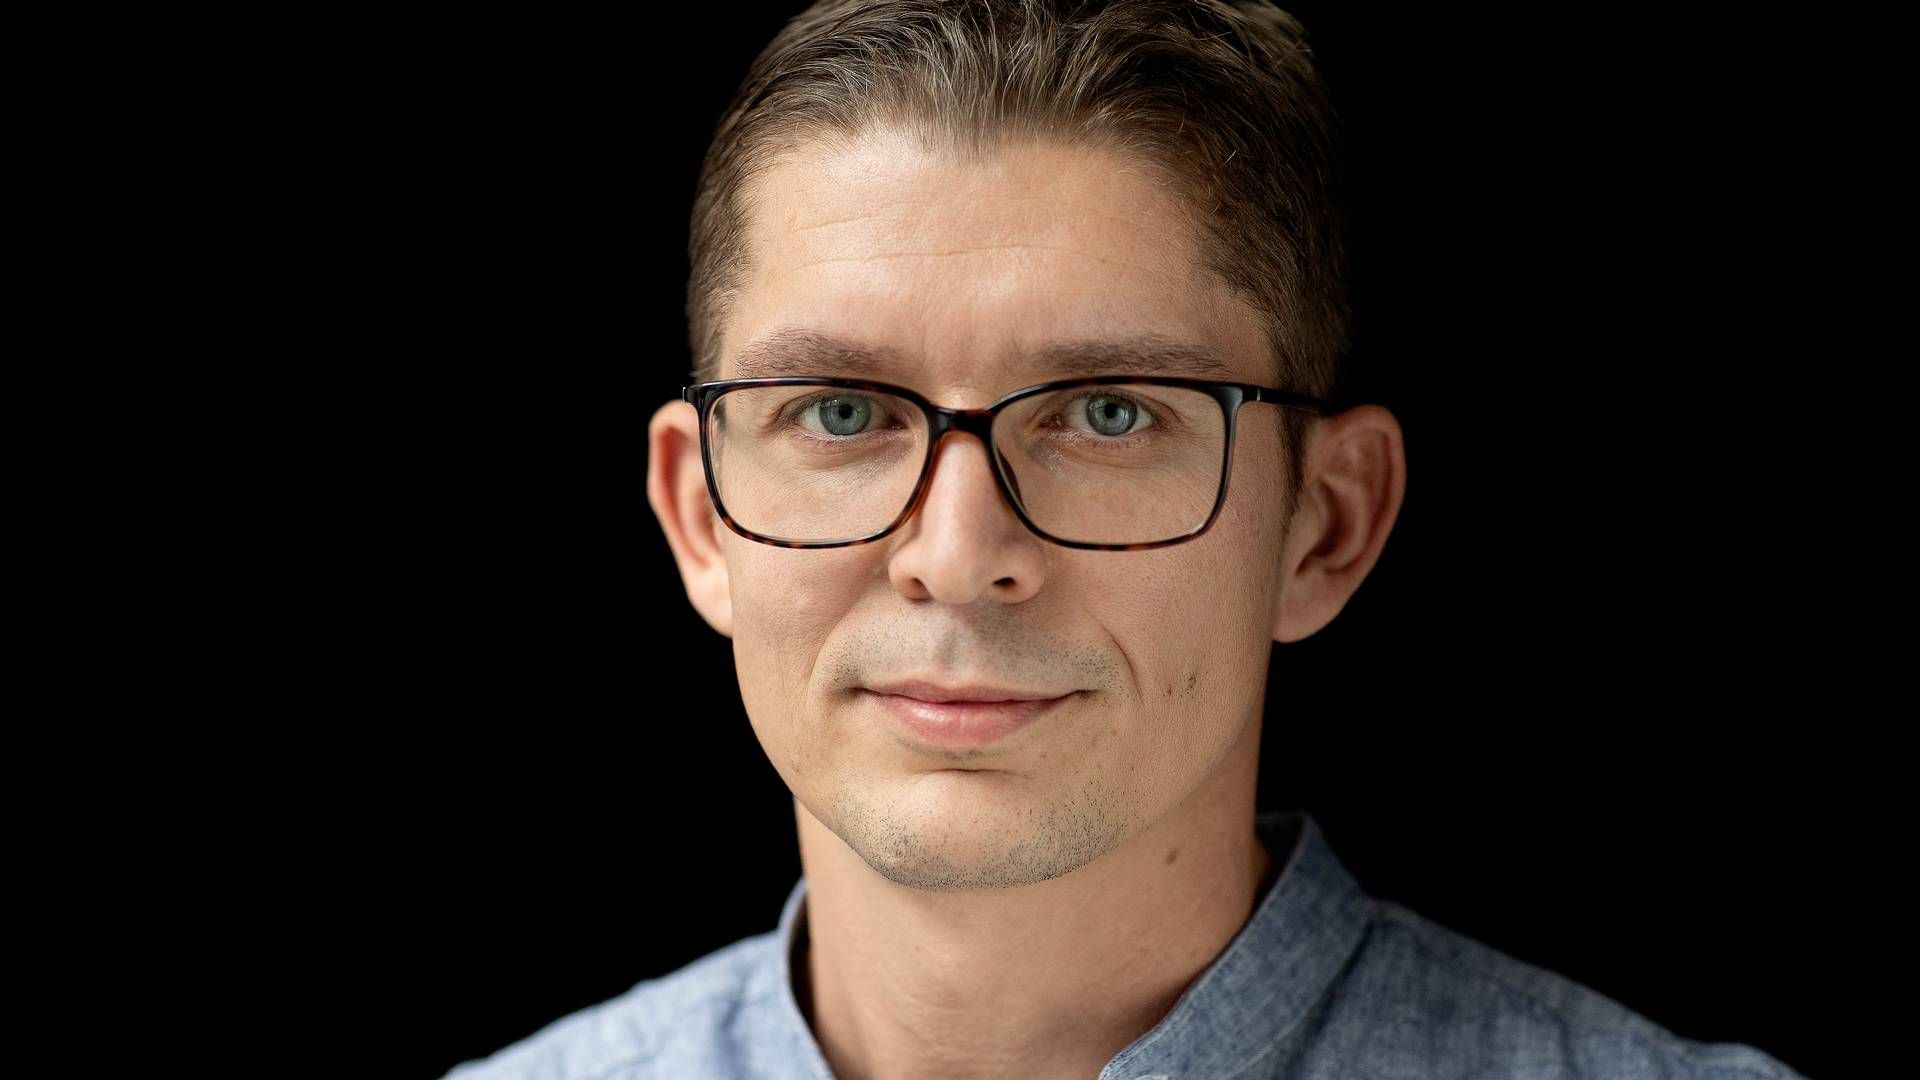 Adm. direktør i Dragsbæk, Christian Munk. | Foto: Peter Hove Olesen